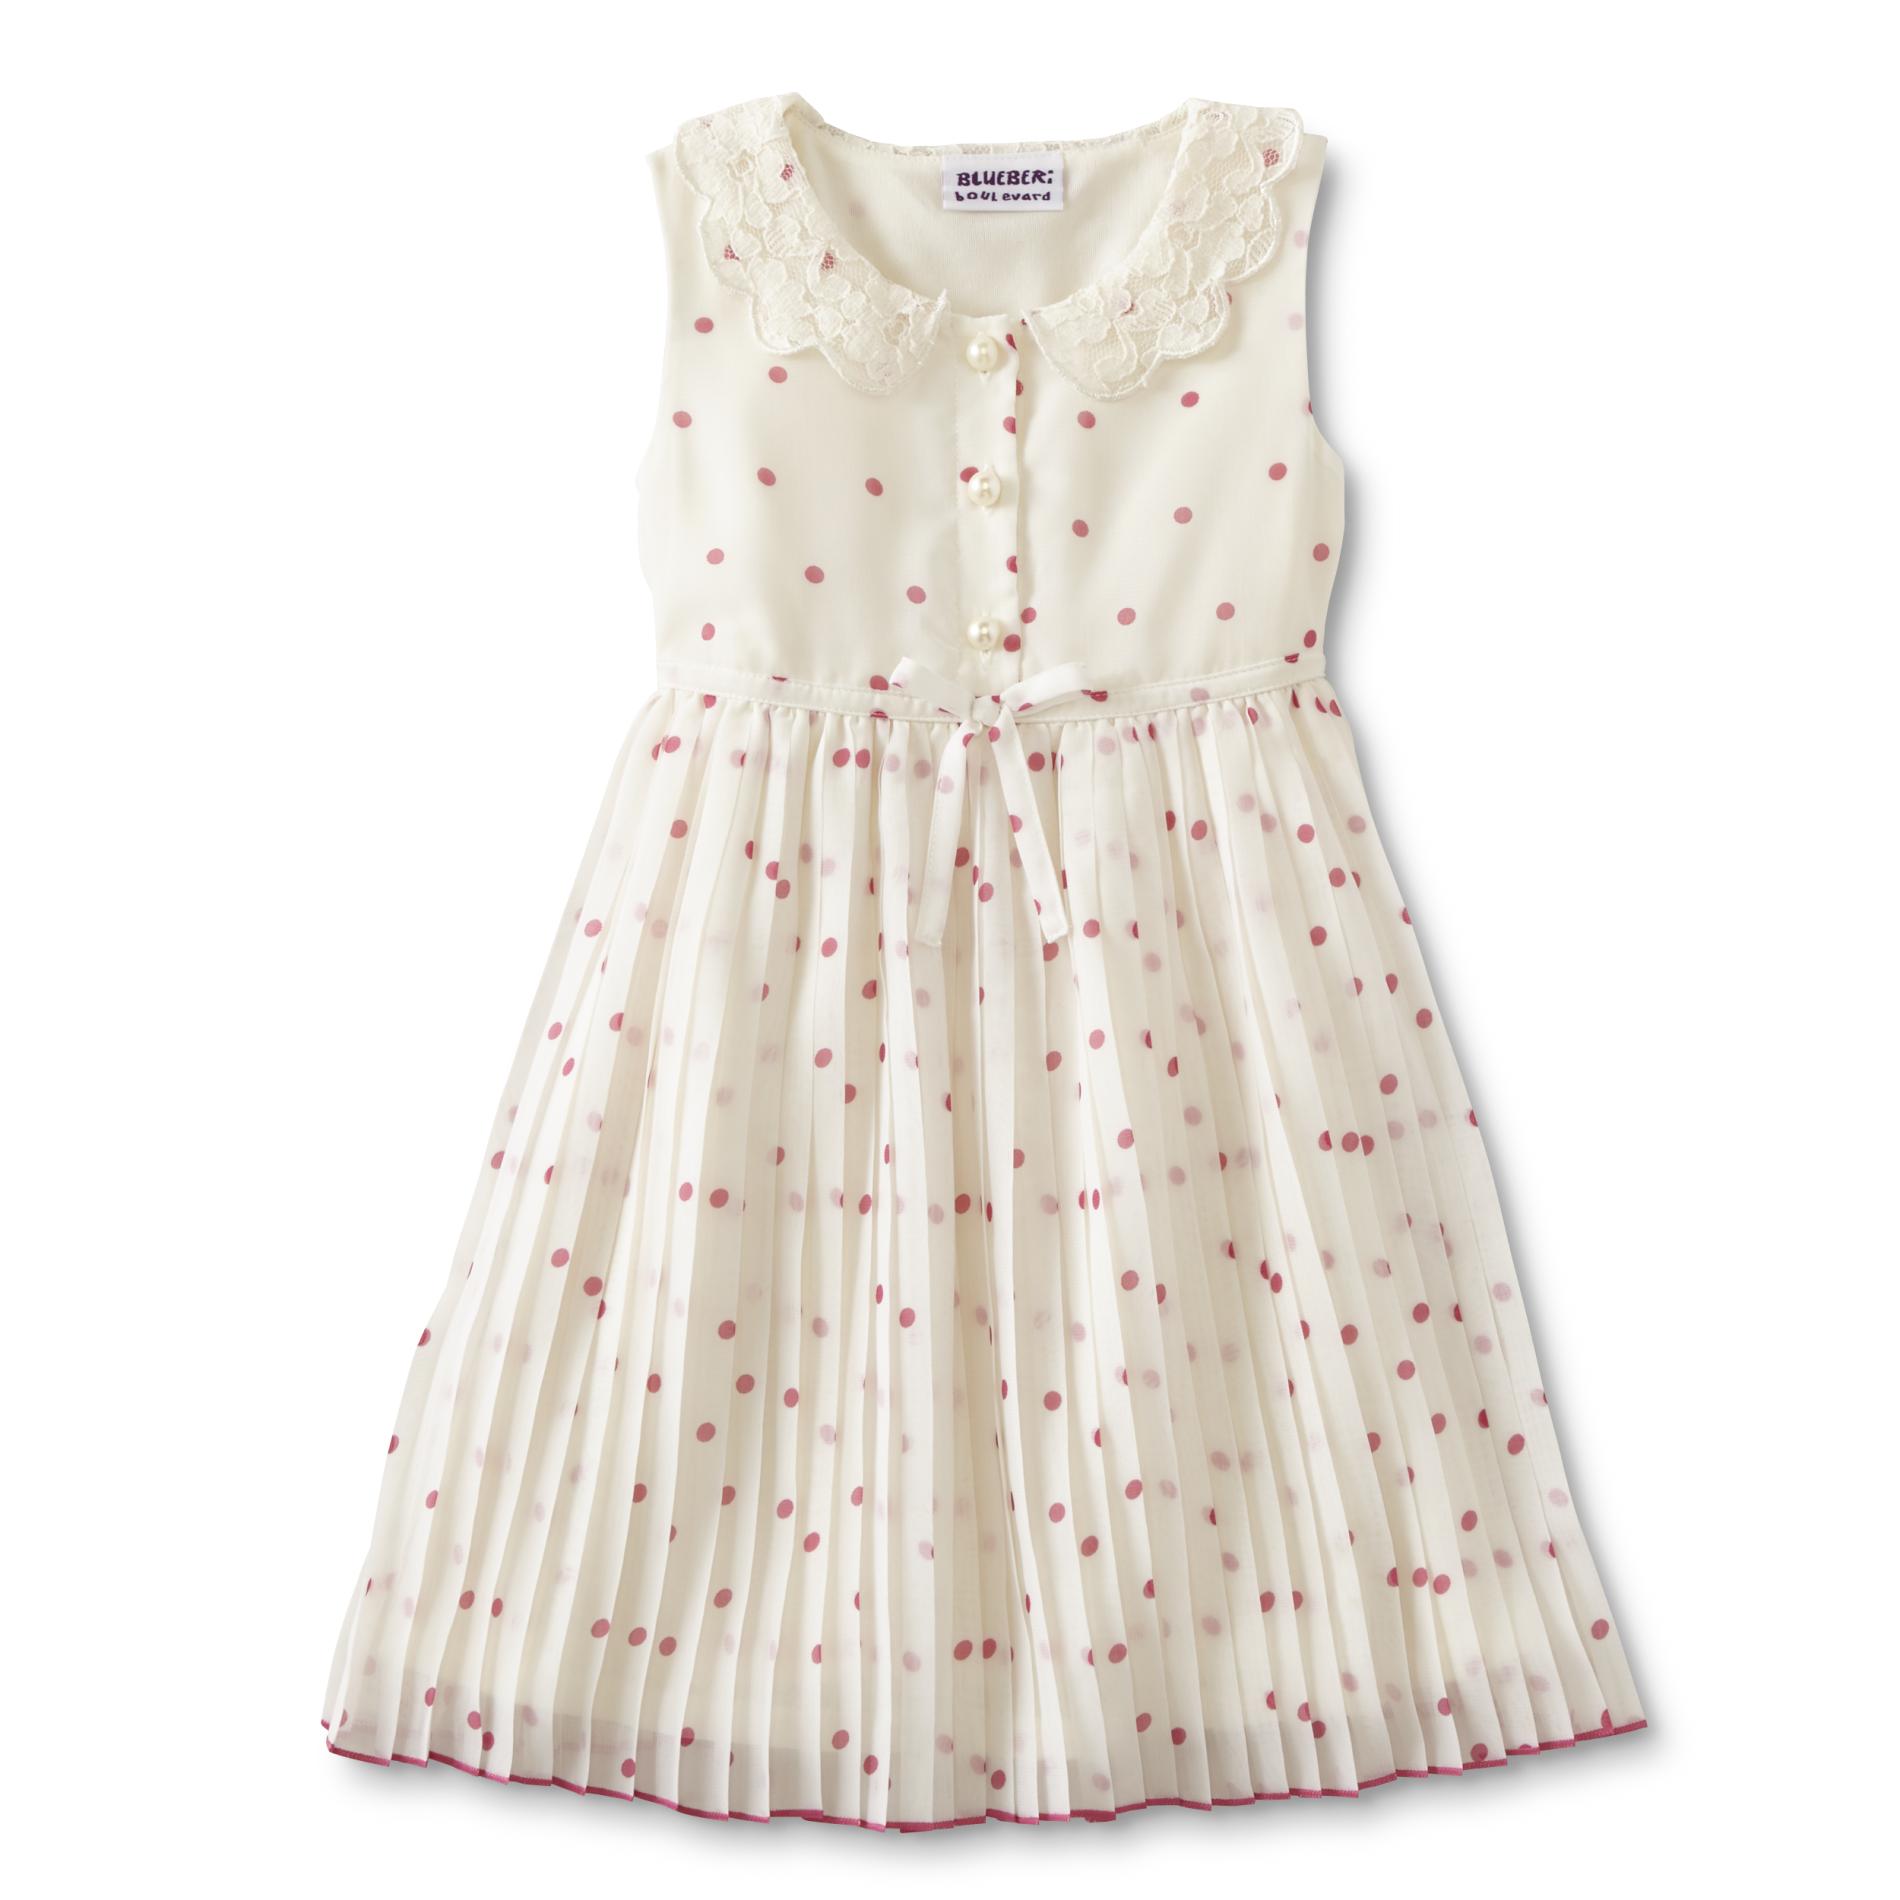 Blueberi Boulevard Infant & Toddler Girls' Woven Sleeveless Dress - Polka Dot